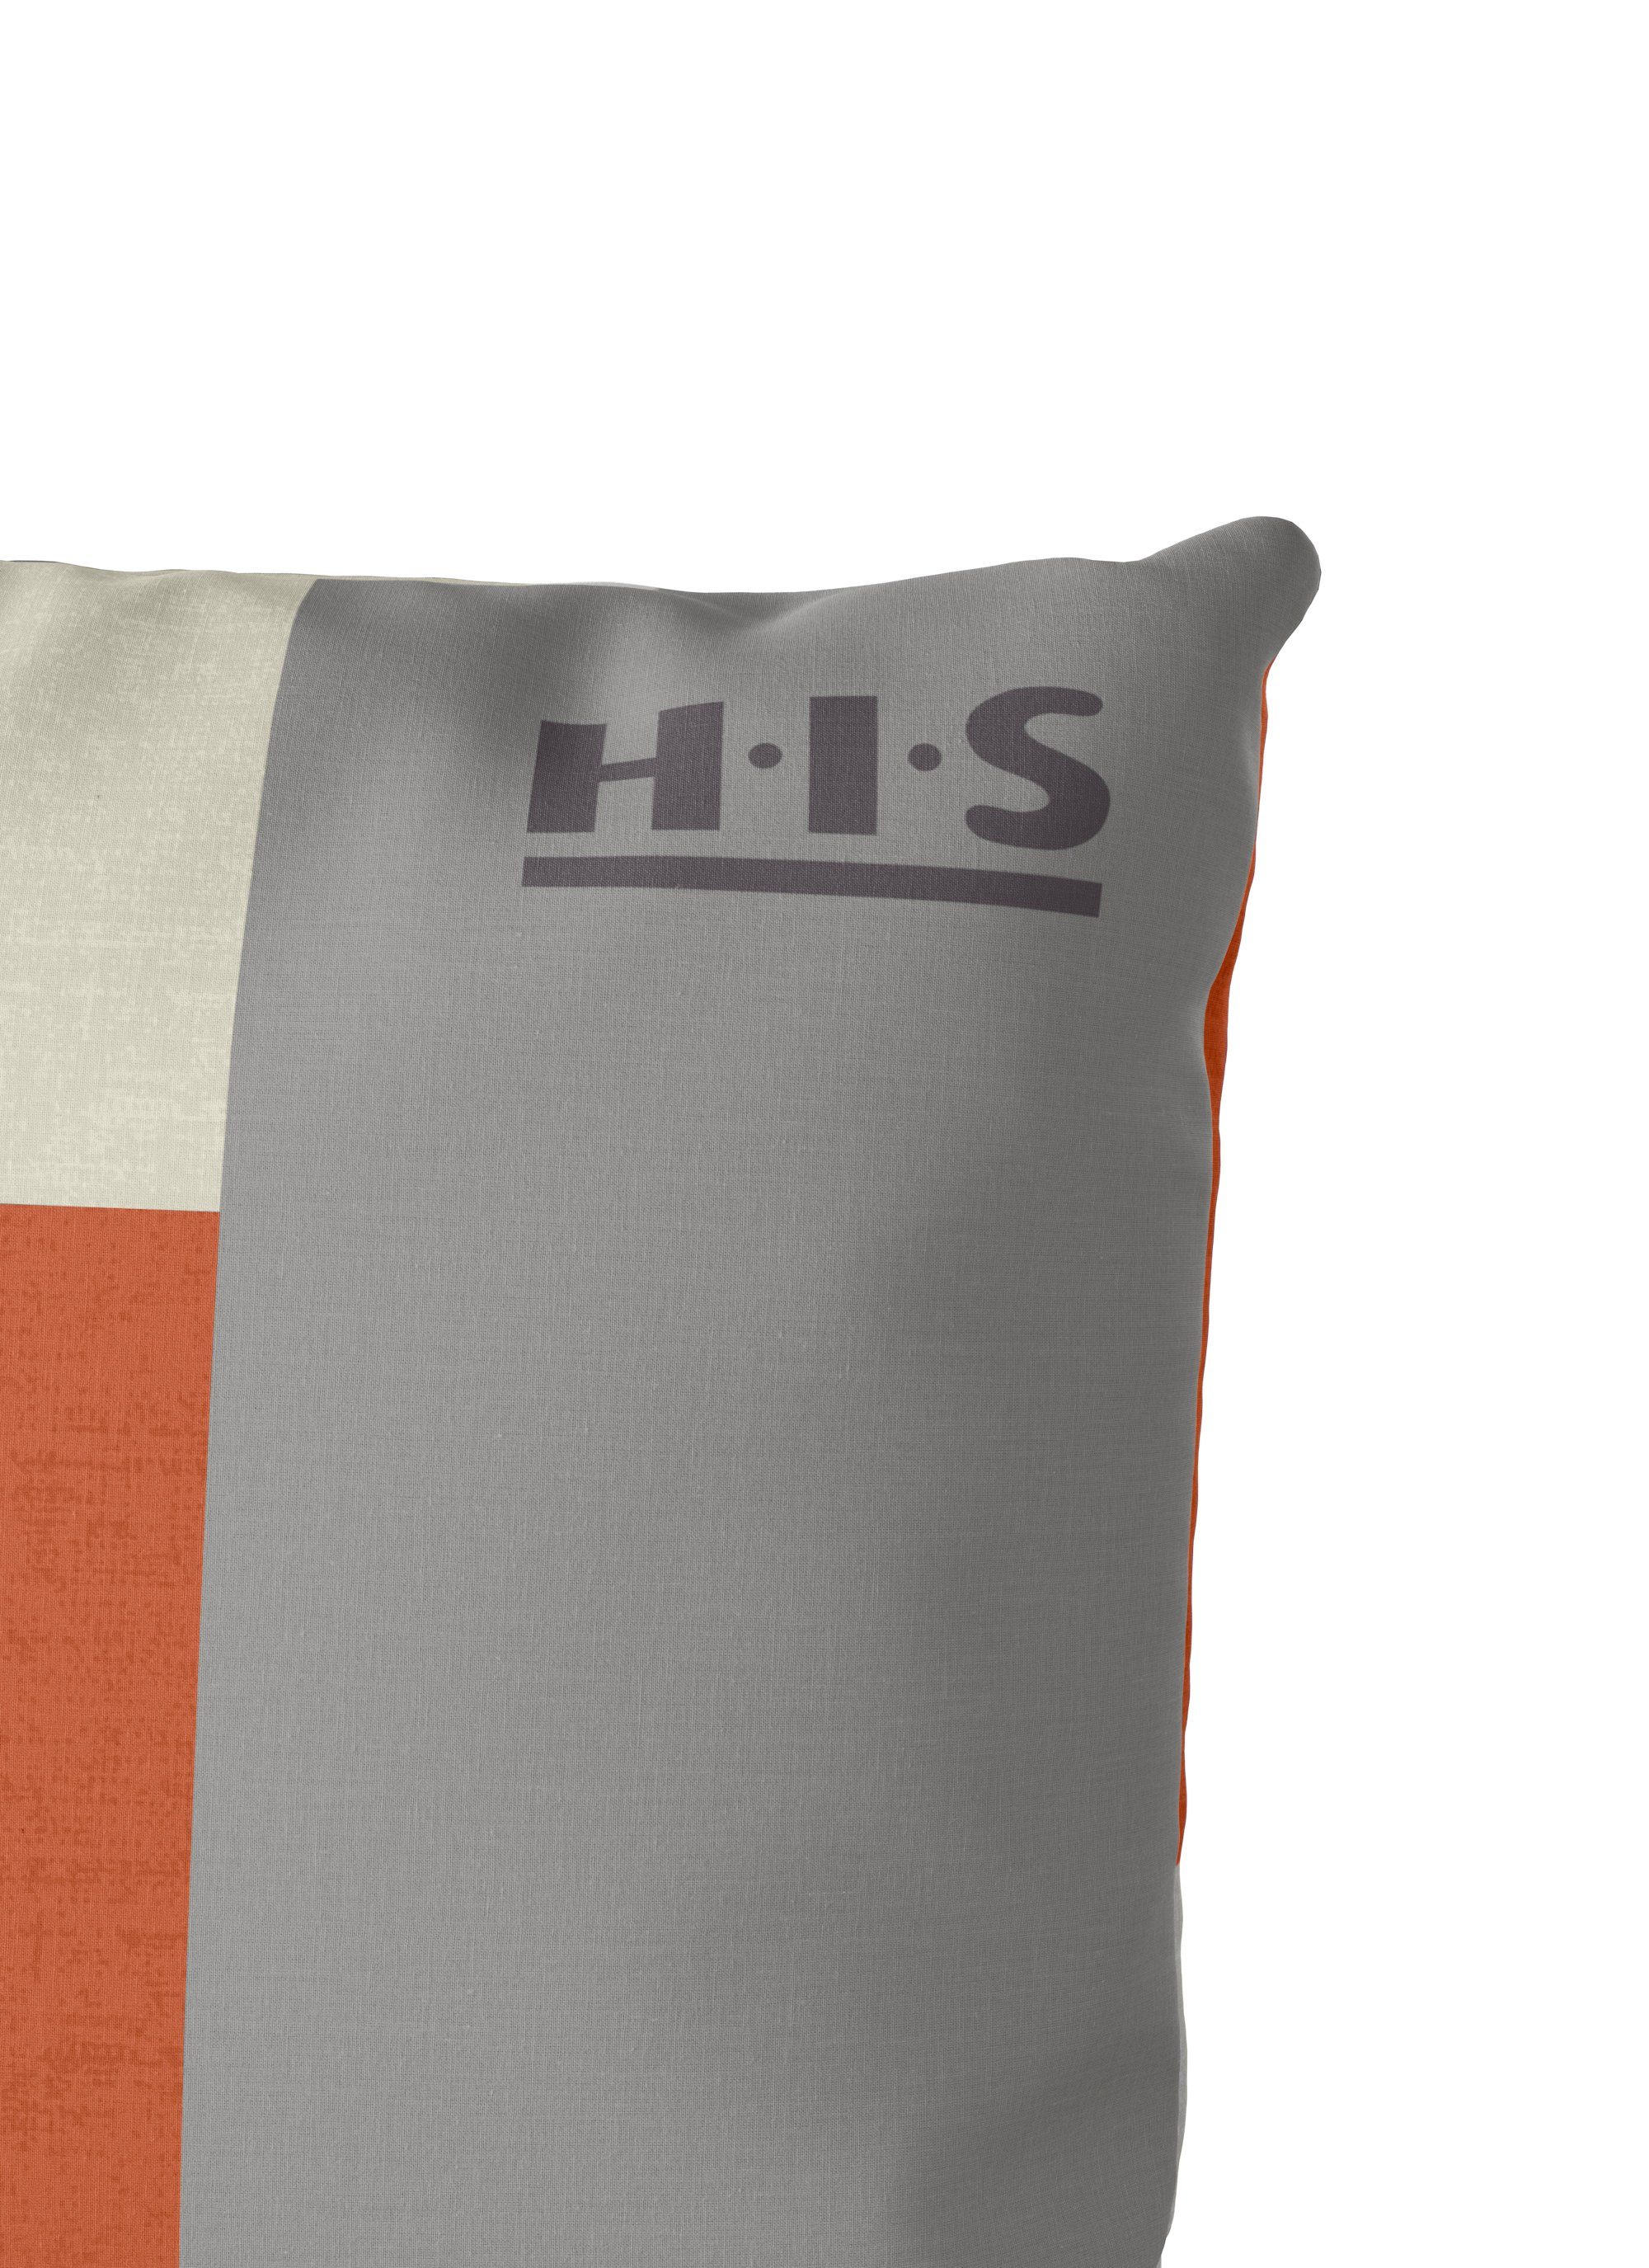 Baumwolle, teilig, H.I.S, 135x200 in 2 grau/orange cm, Linon, Streifen-Design Bettwäsche oder 155x220 zeitlose Bettwäsche Etienne Gr. Bettwäsche aus mit